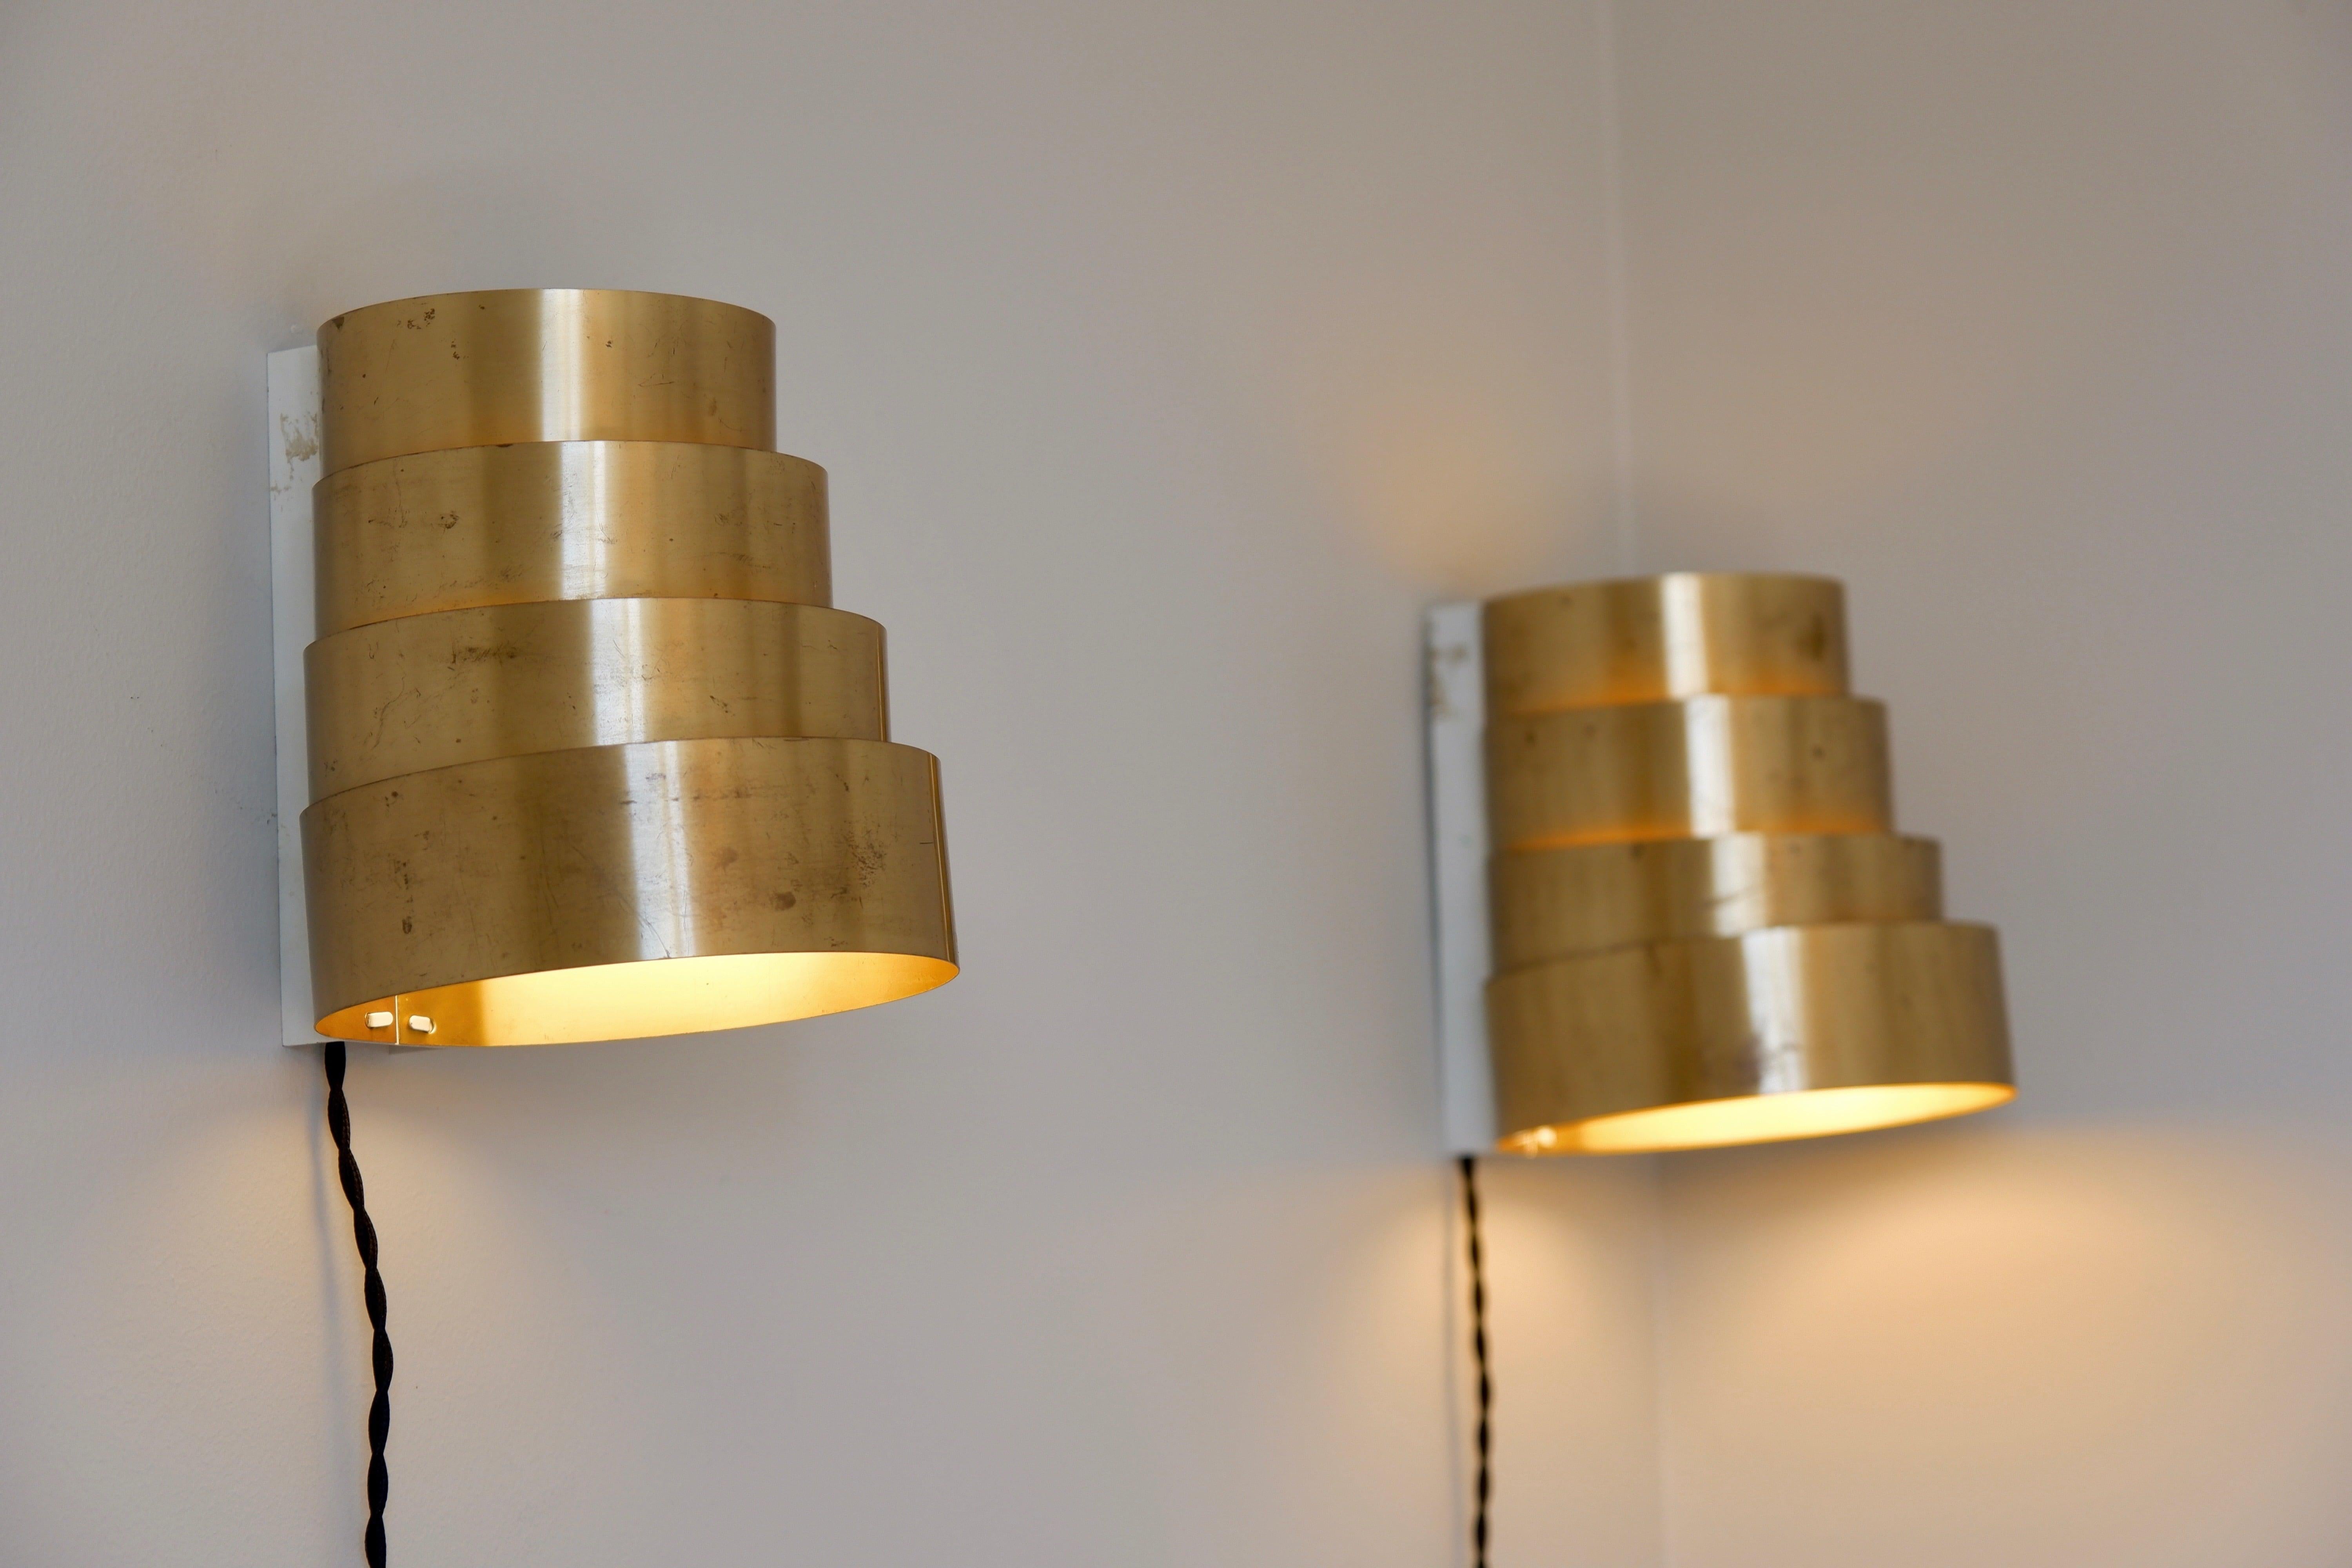 Rare paire d'appliques conçues par Hans Agnes Jakobsson à Design/One en Suède dans les années 60. Les deux lampes sont fabriquées en laiton massif avec 4 anneaux de laiton pour couvrir les bulles de lumière. L'état est agréable avec une bonne patine